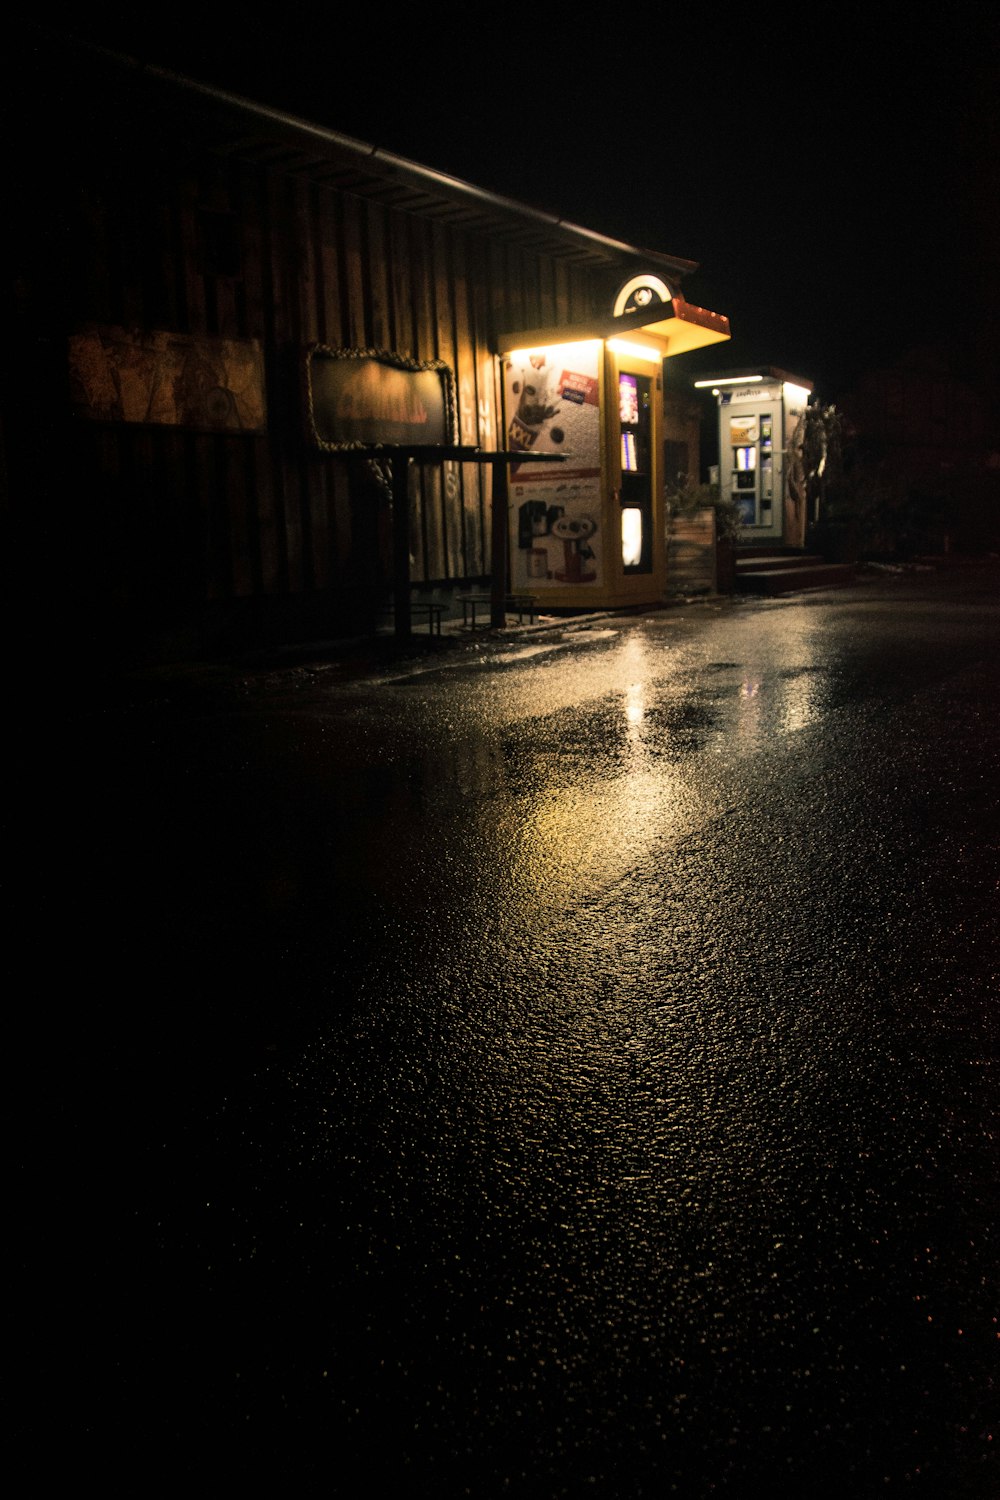 상점 앞이 밝아진 밤의 어두운 거리